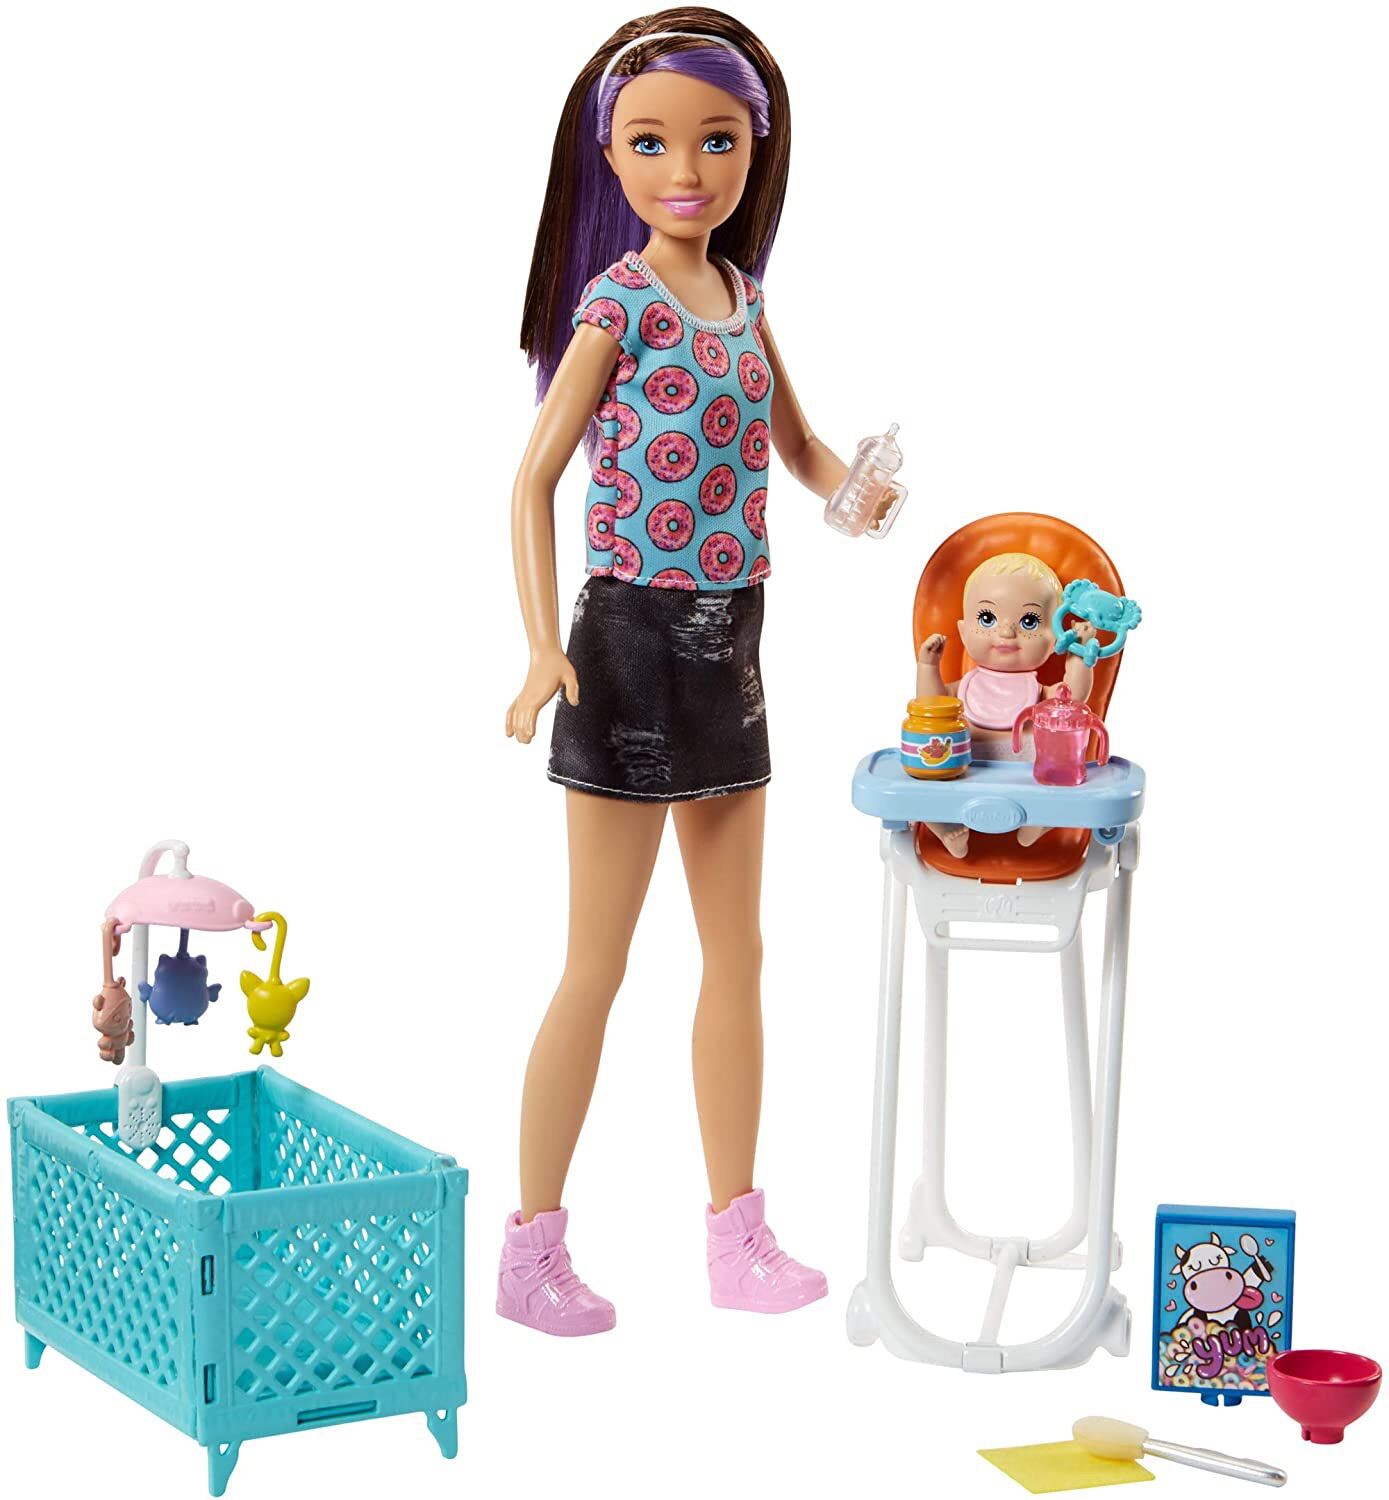 Bộ đồ chơi Barbie Chelsea chính hãng nhập Mỹ, barbie skipper